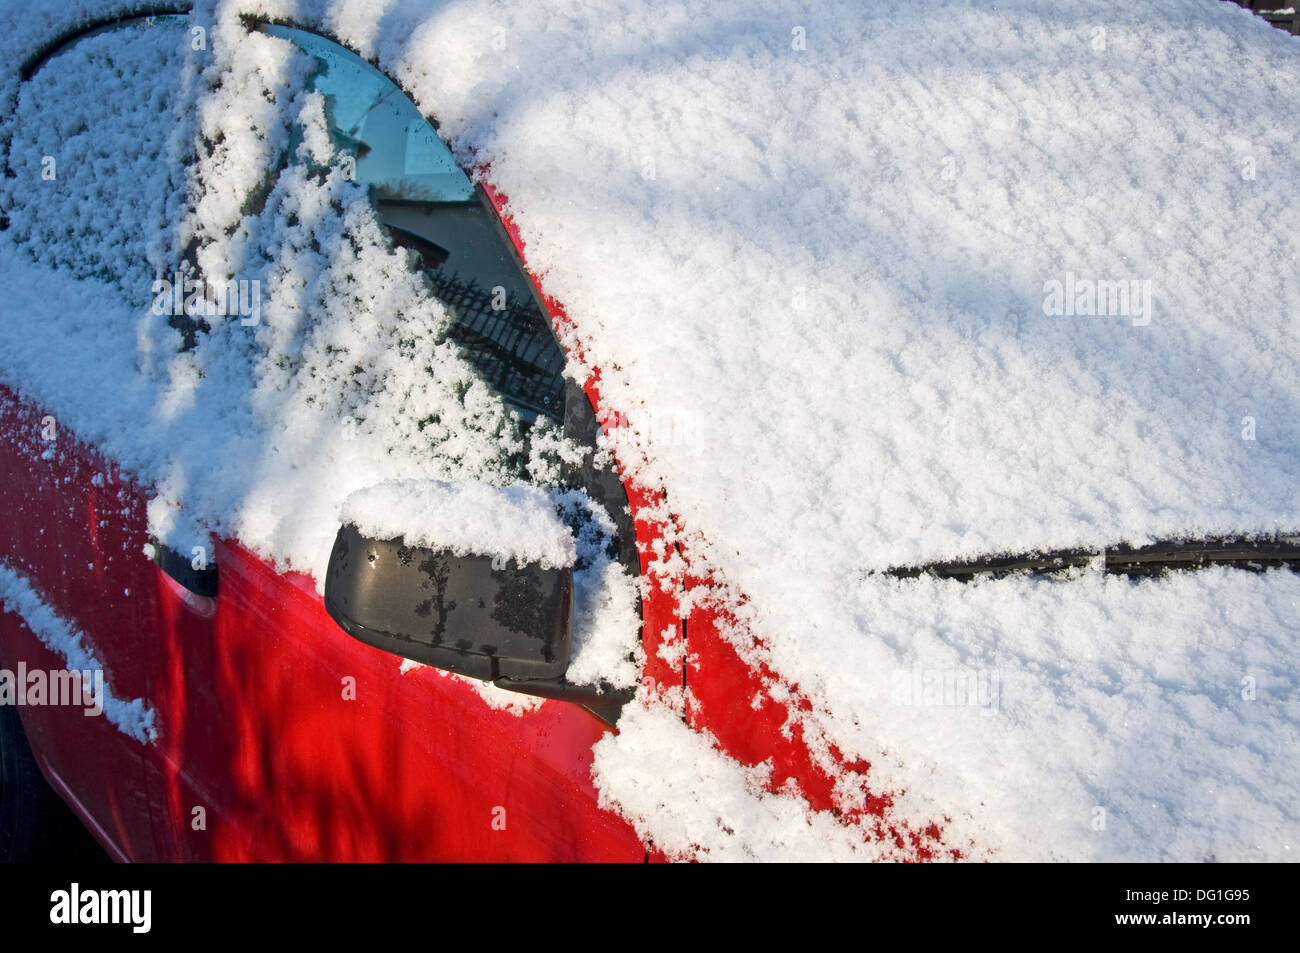 Neige sur une voiture rouge - France Banque D'Images